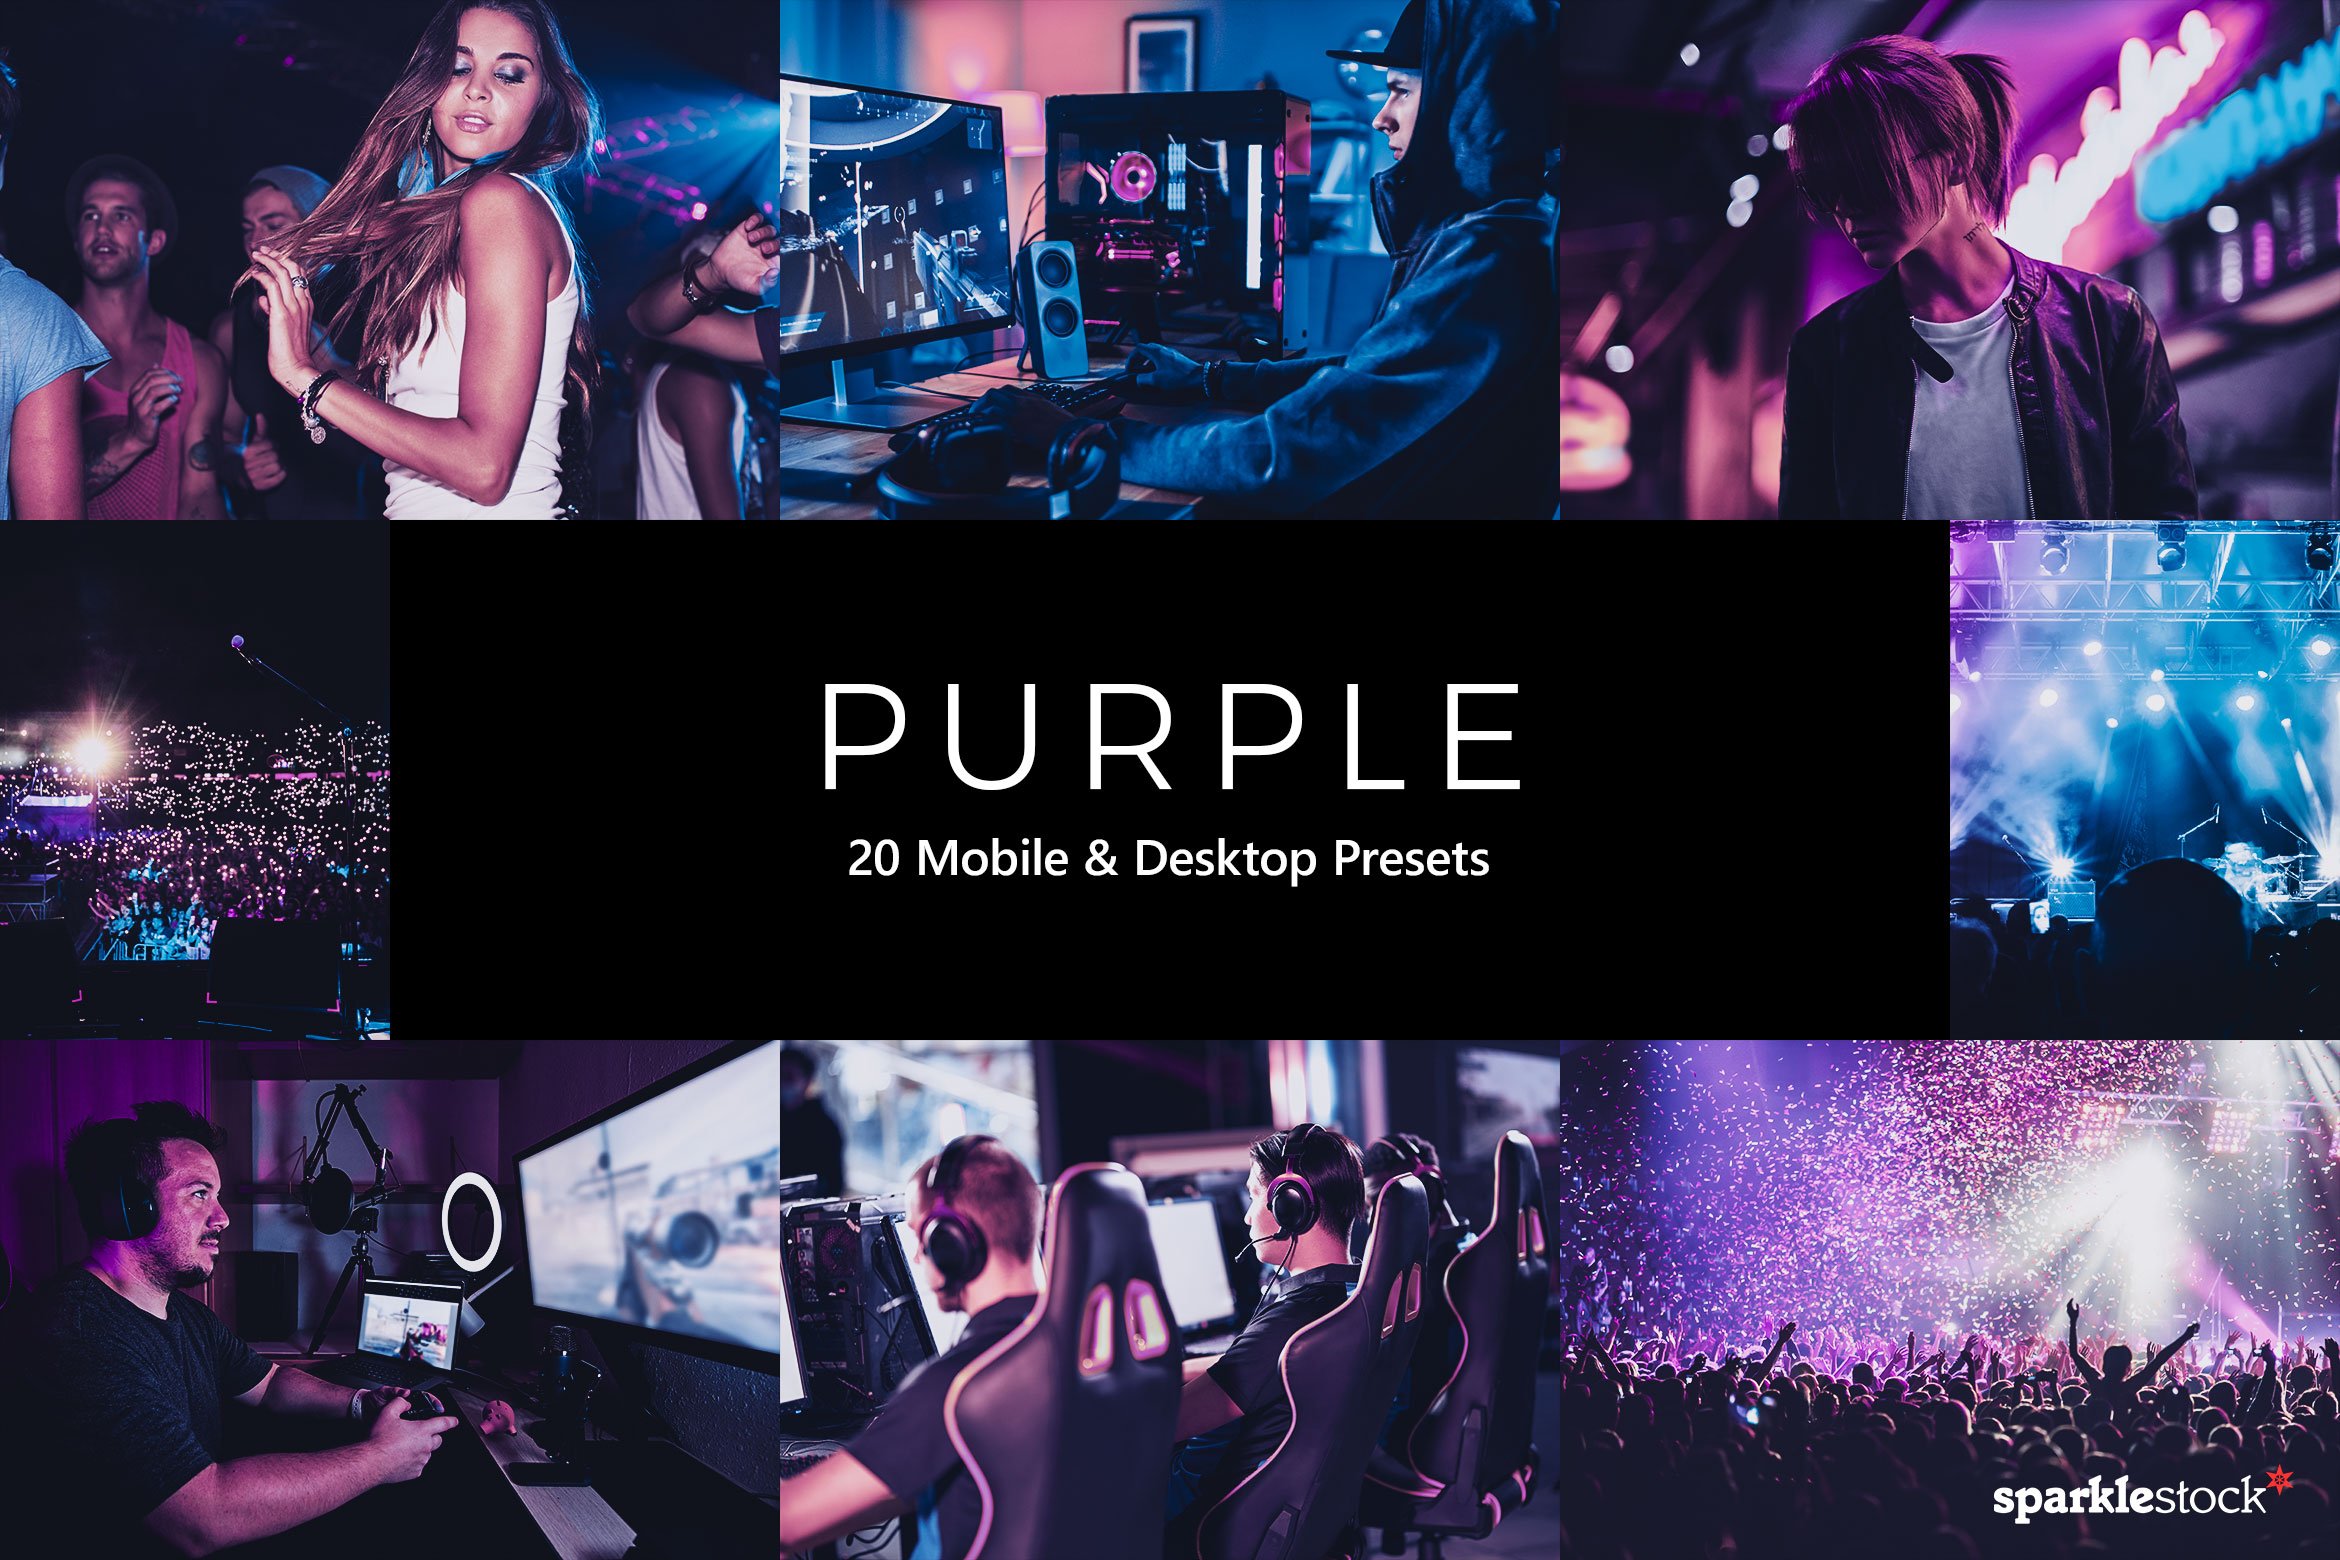 20 Purple Lightroom Presets & LUTscover image.